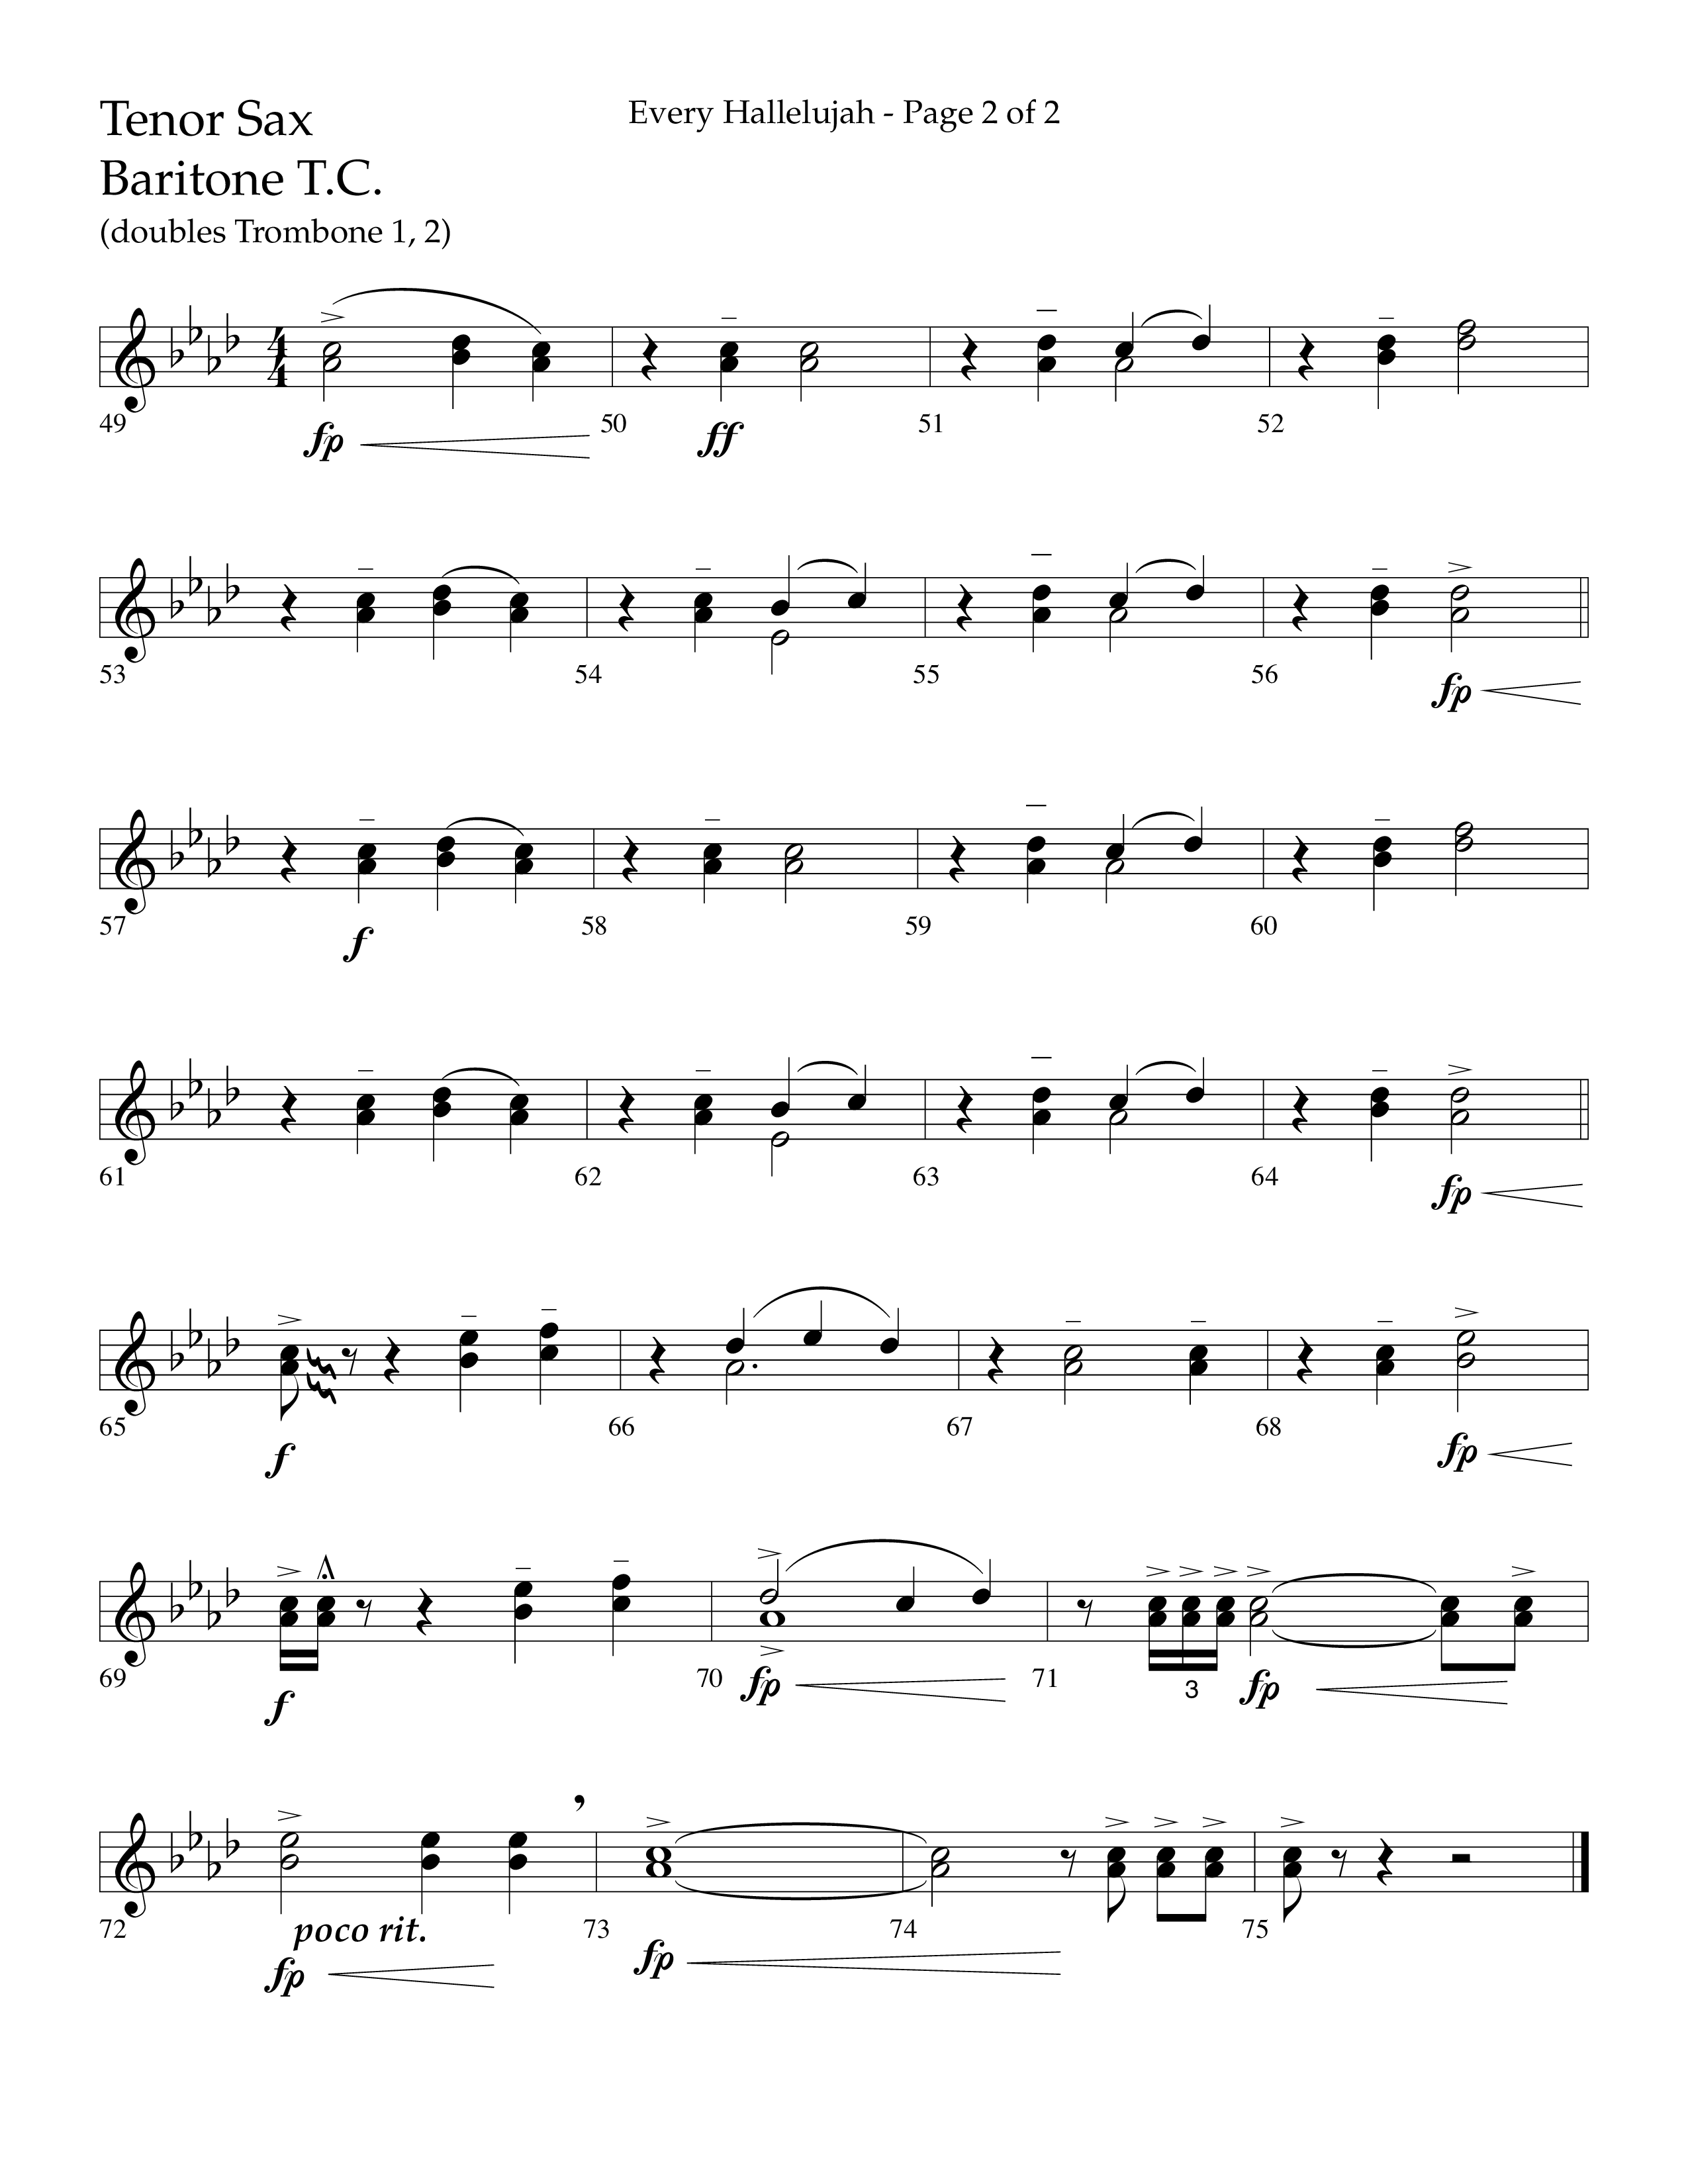 Every Hallelujah (Choral Anthem SATB) Tenor Sax/Baritone T.C. (Lifeway Choral / Arr. Marty Hamby)